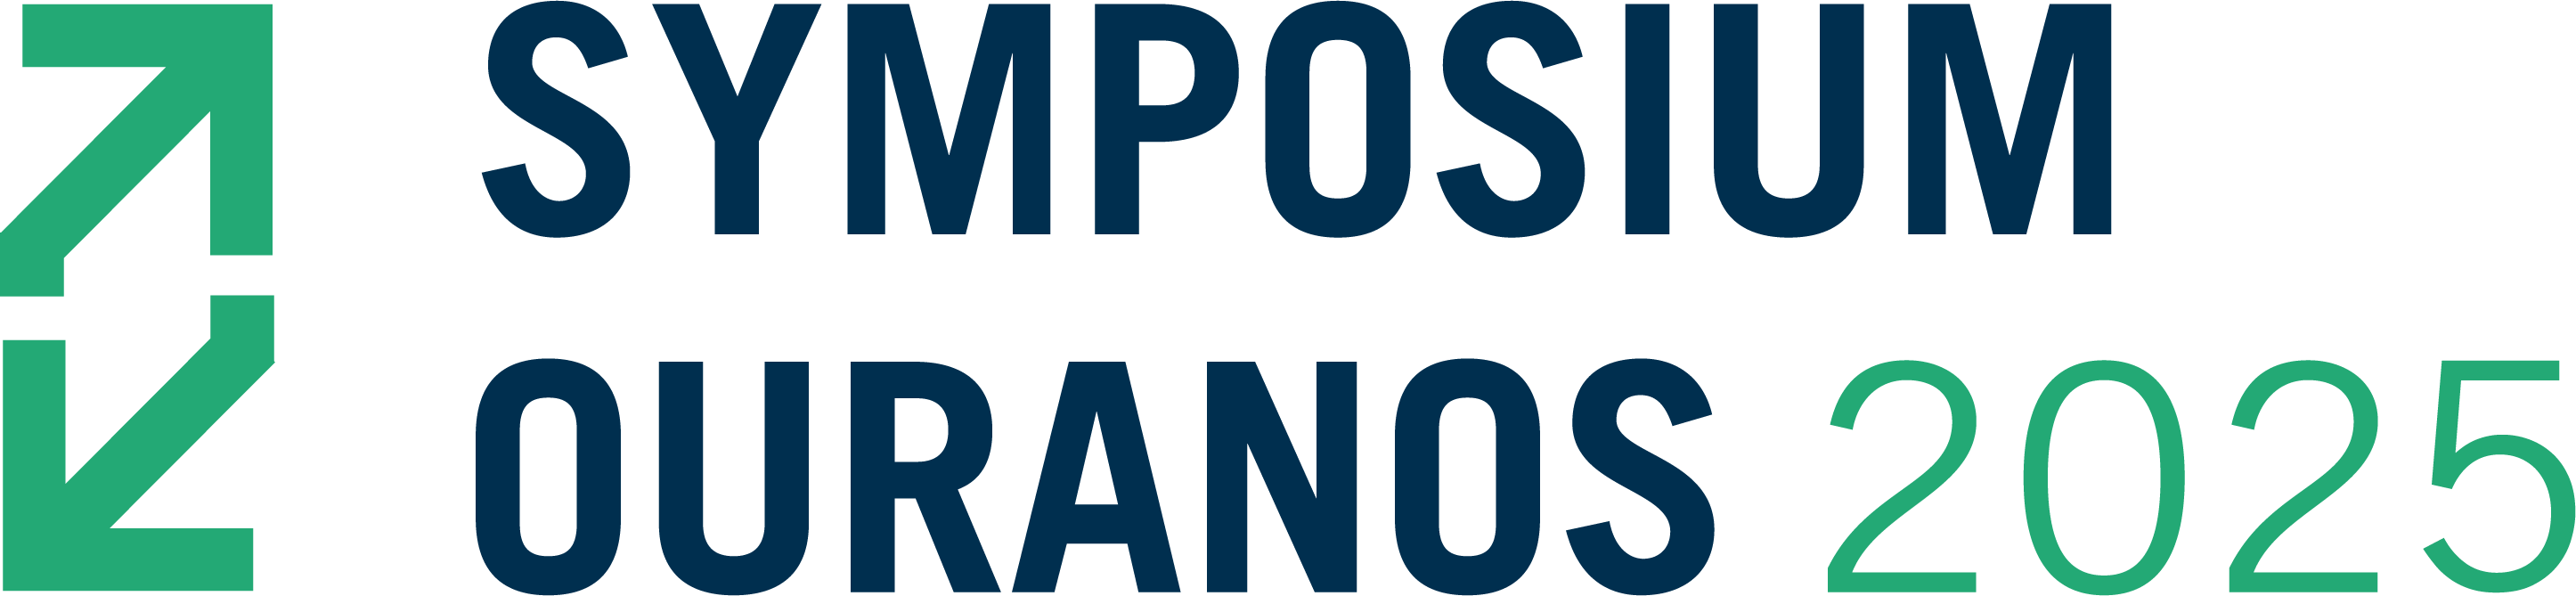 logo symposium 2025